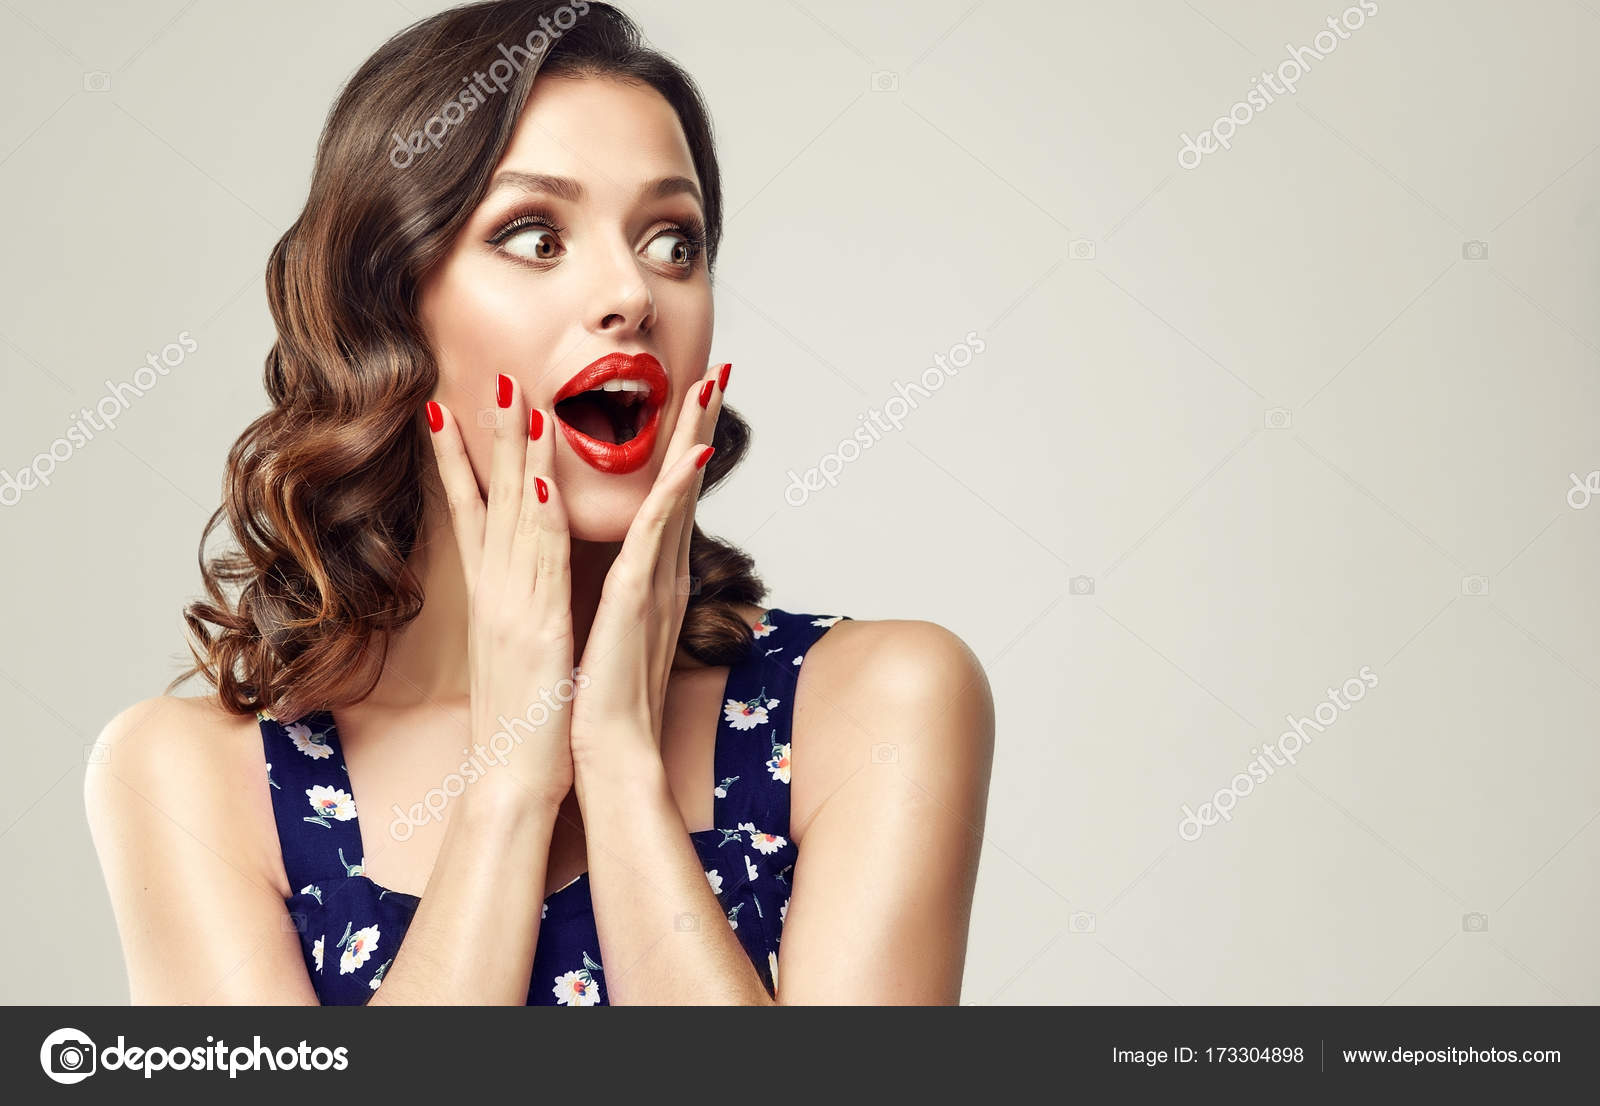 Piękna Kobieta Z Czerwonym Manicure — Zdjęcie Stockowe © Sofia Zhuravets 173304898